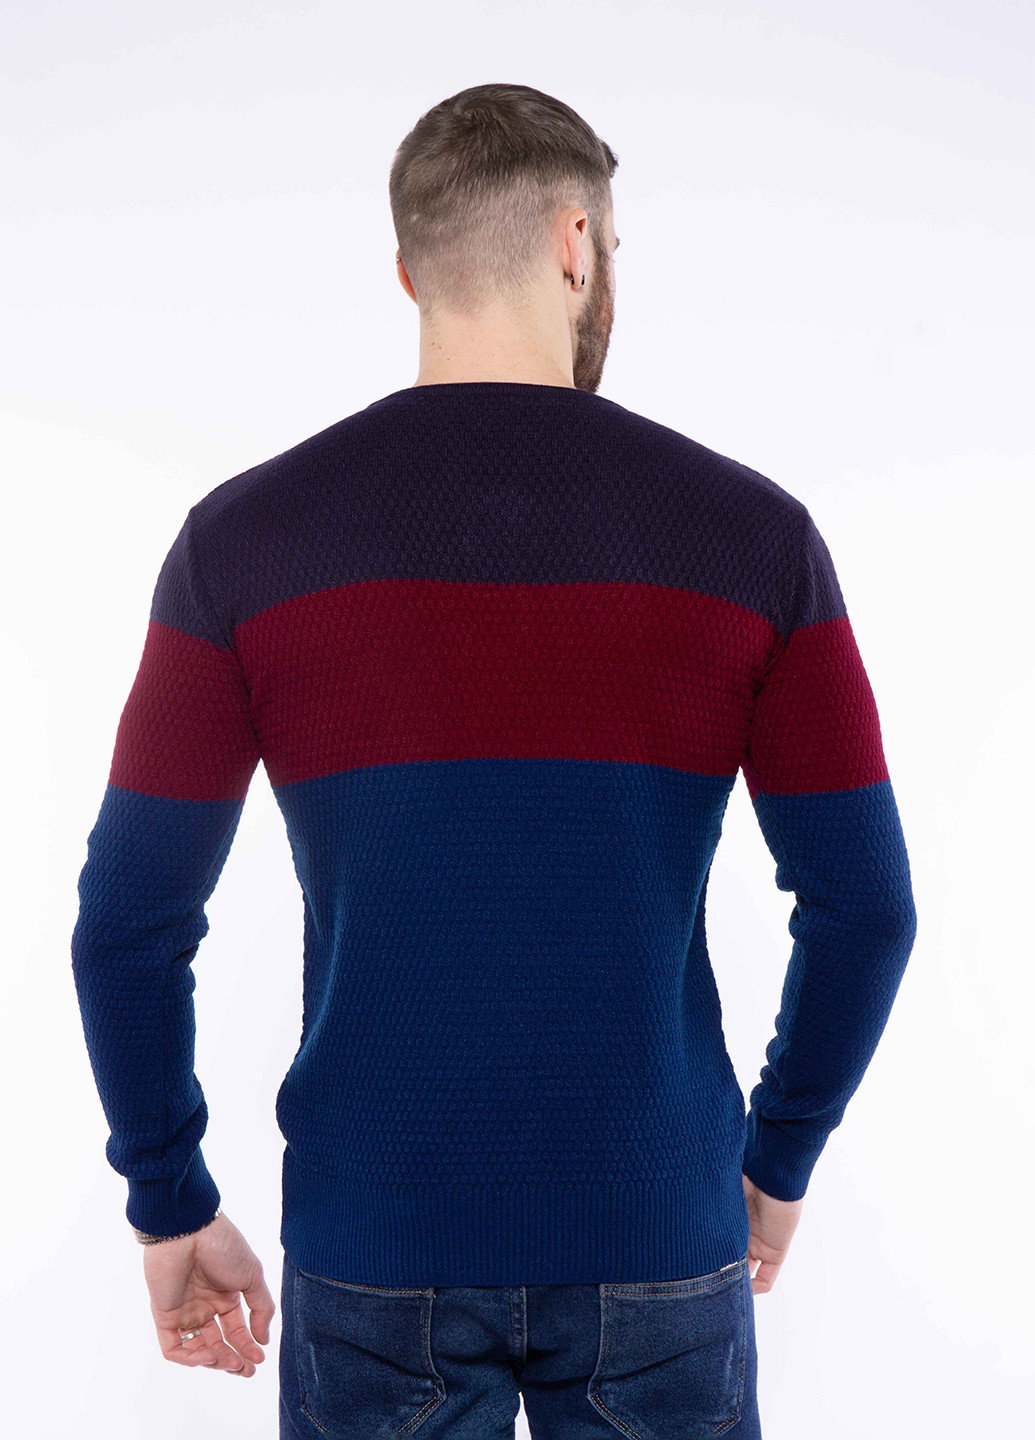 Комбинированный демисезонный пуловер пуловер Time of Style